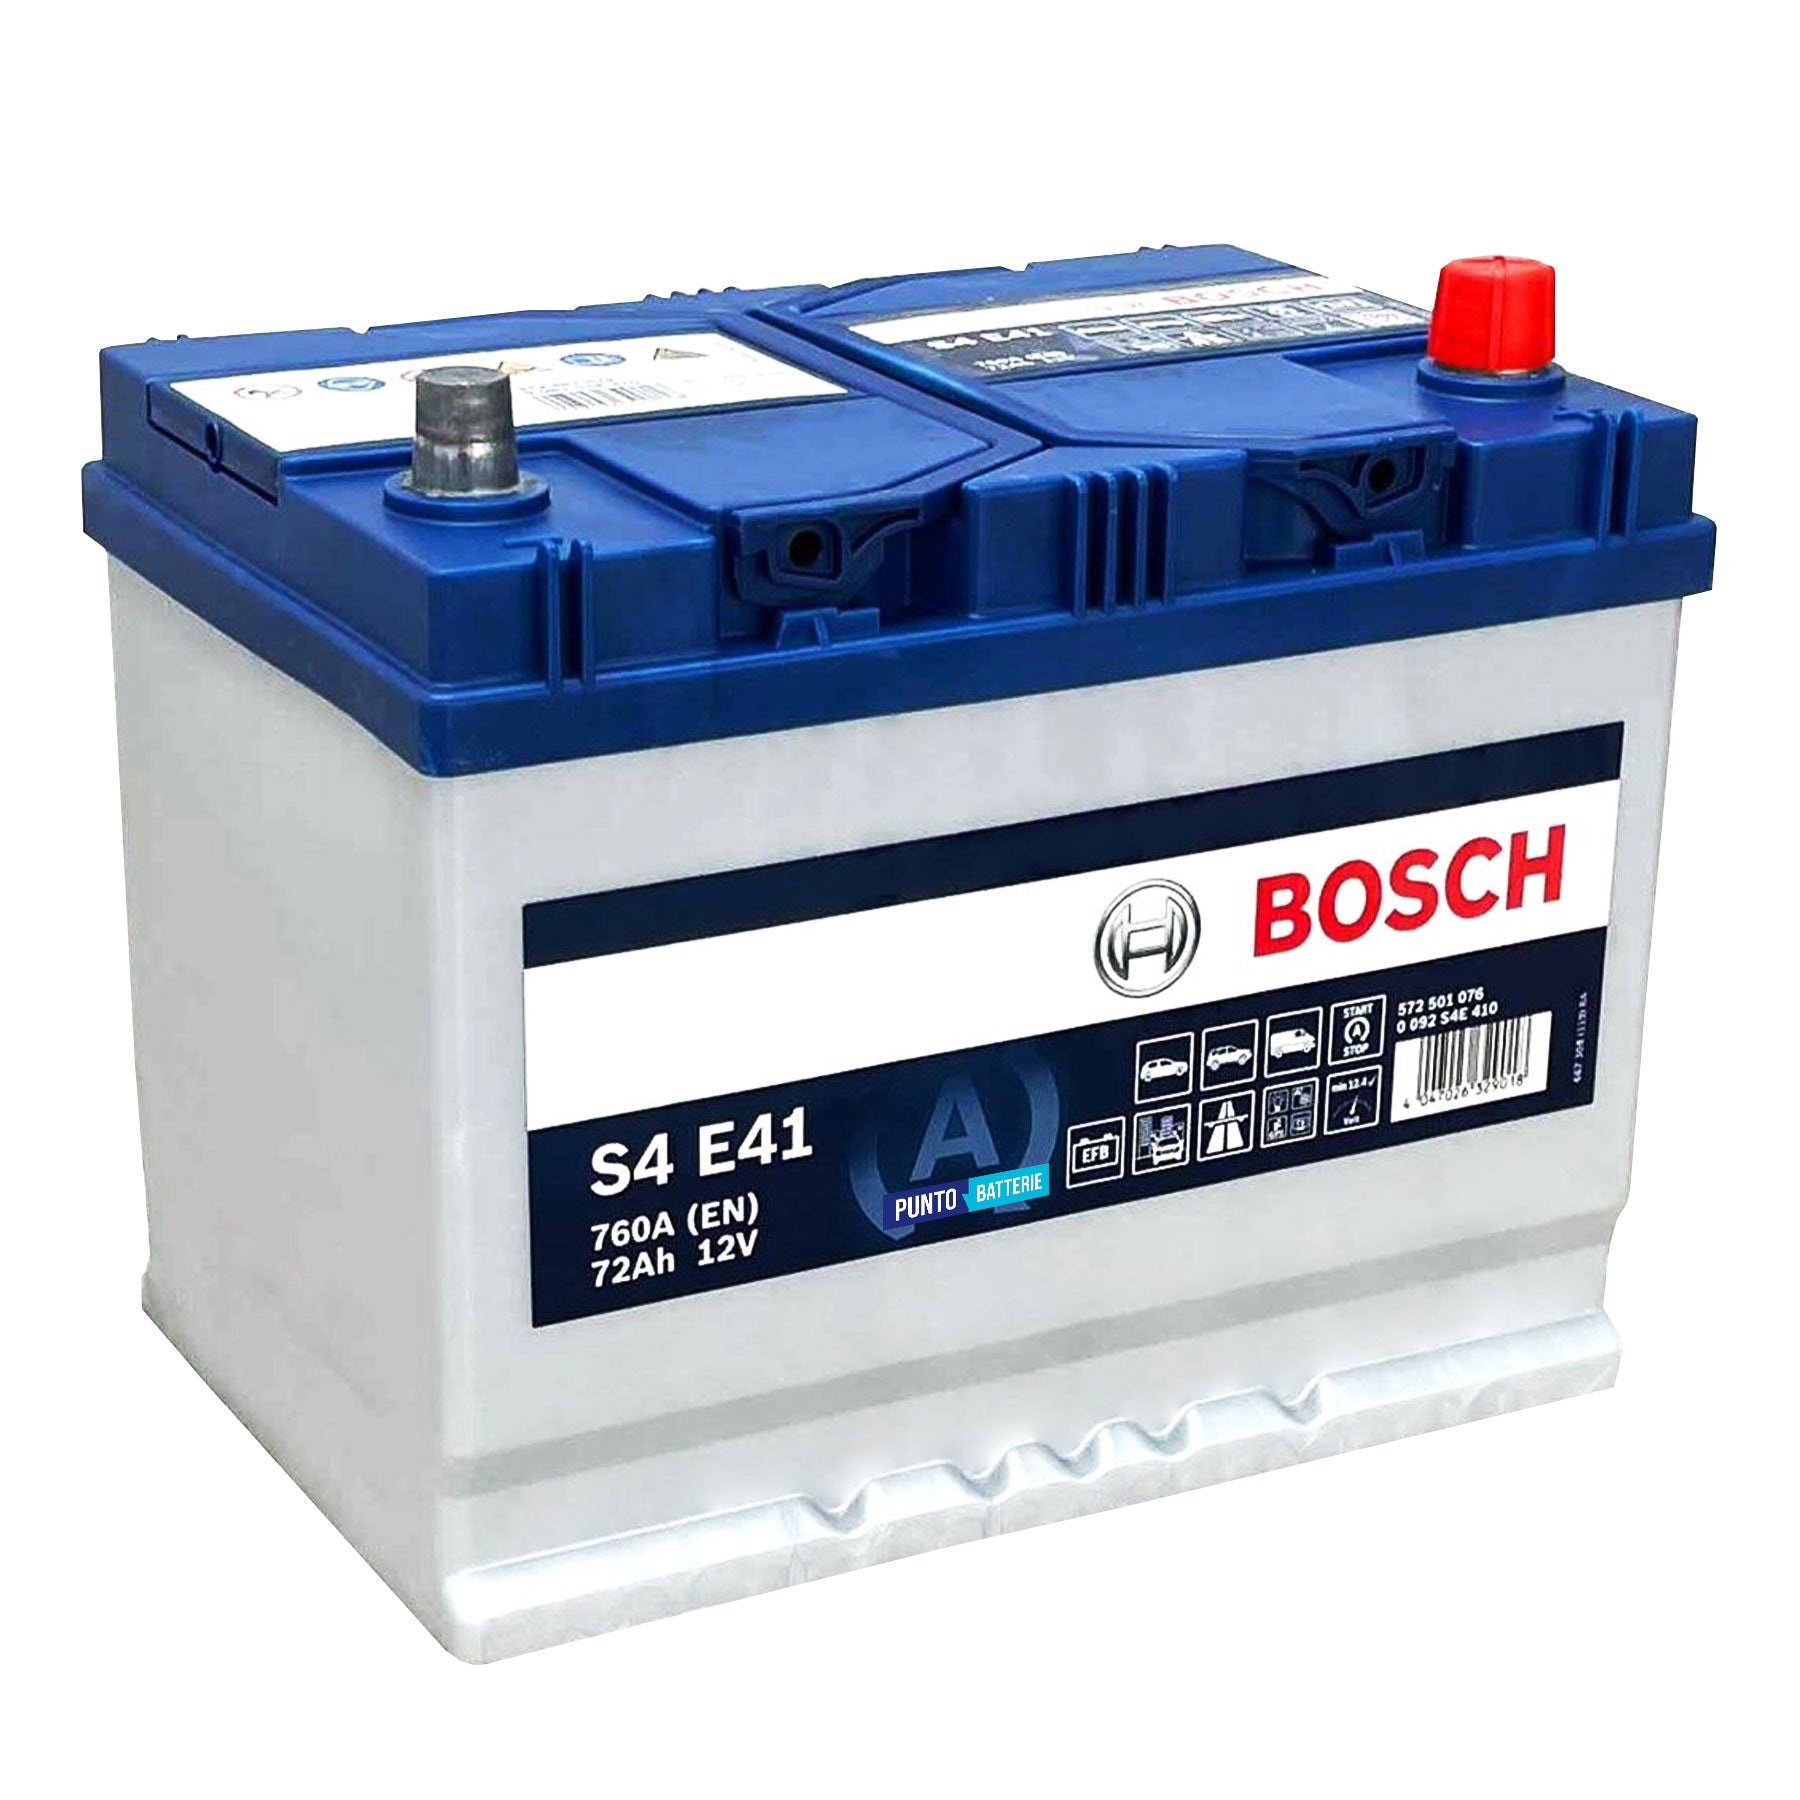 Batteria originale Bosch S4E S4 E41, dimensioni 260.7 x 175 x 218.5, polo positivo a destra, 12 volt, 72 amperora, 760 ampere, EFB. Batteria per auto e veicoli leggeri con start e stop.